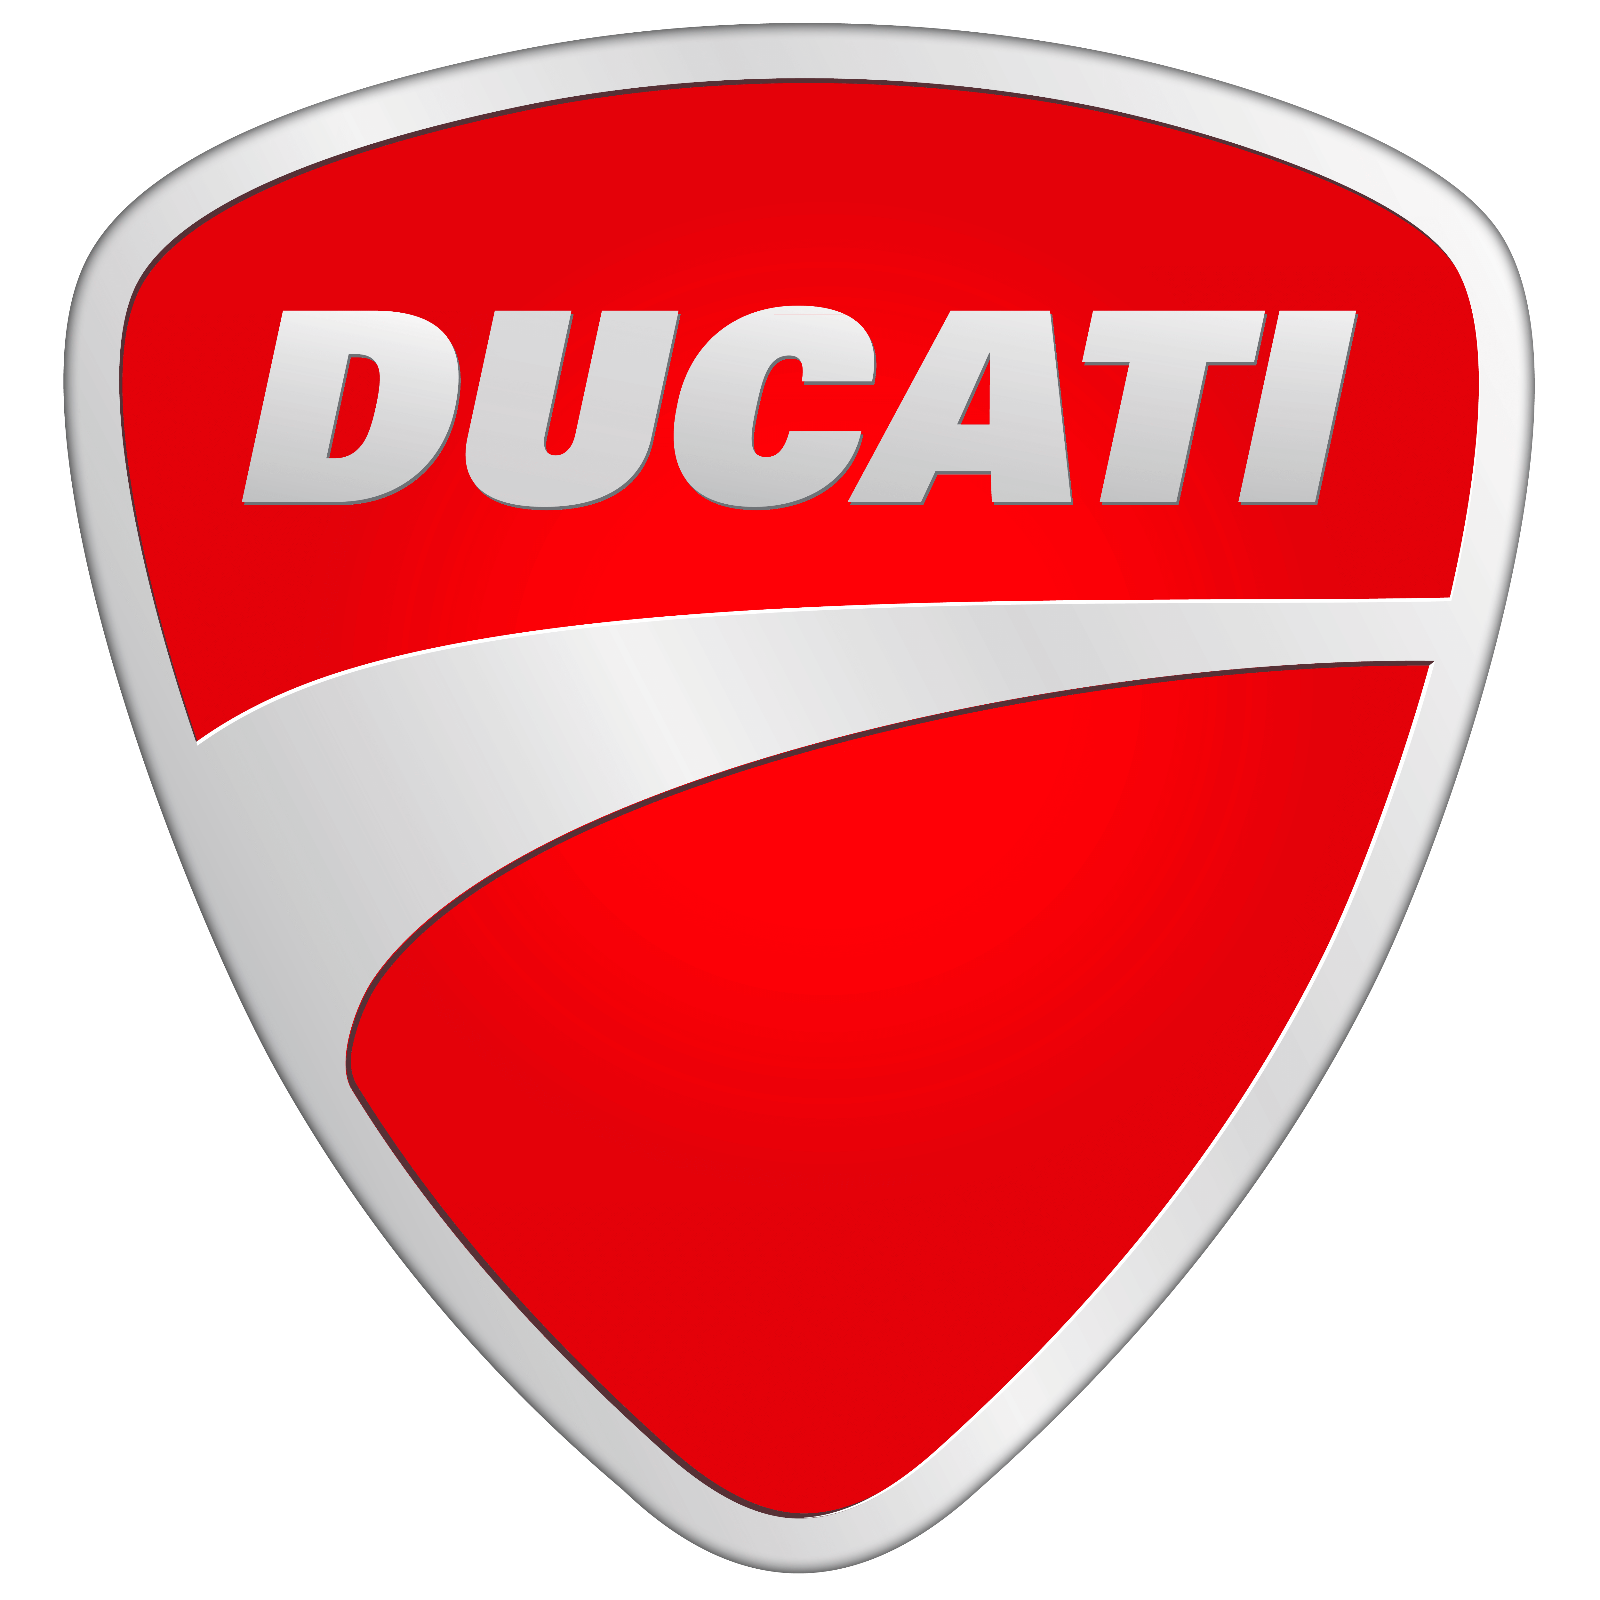 Ducati Ducatiana Short-sleeved T-shirt-Red